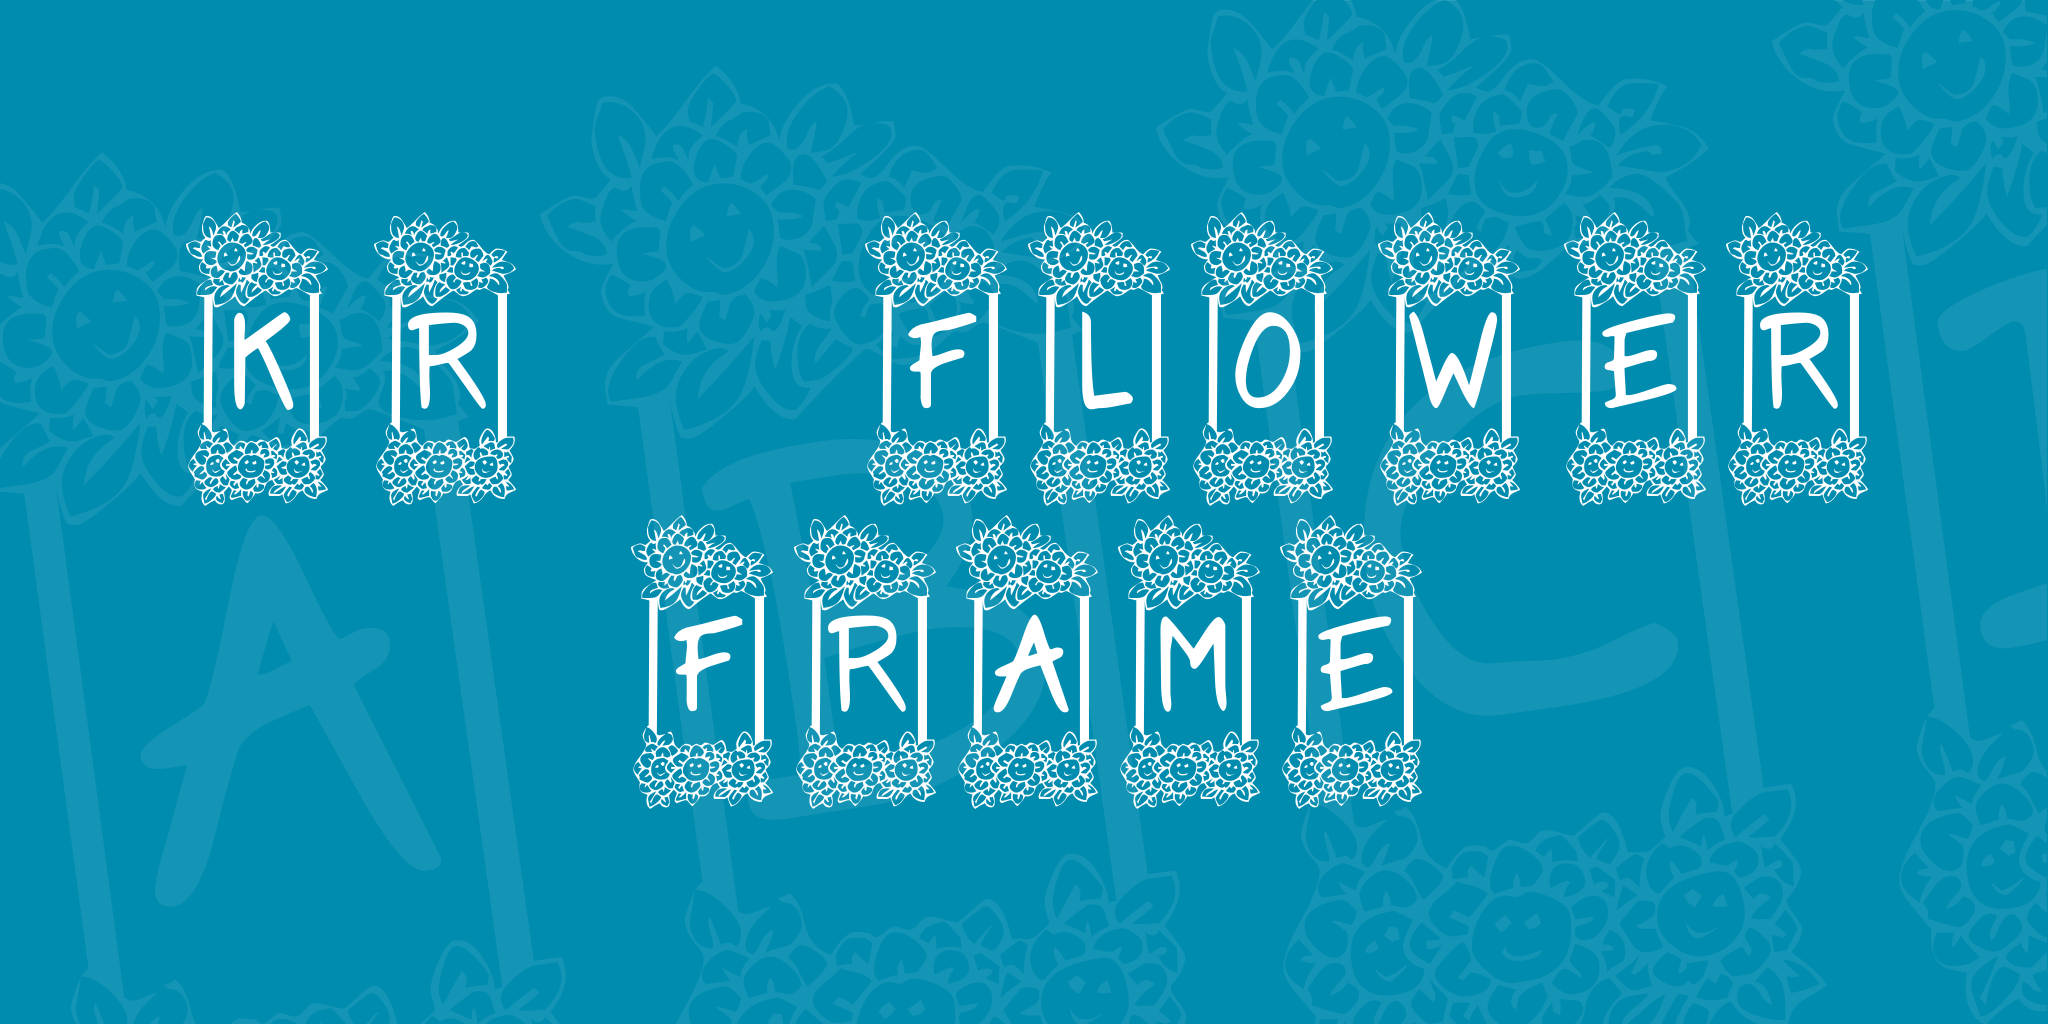 Kr Flower Frame